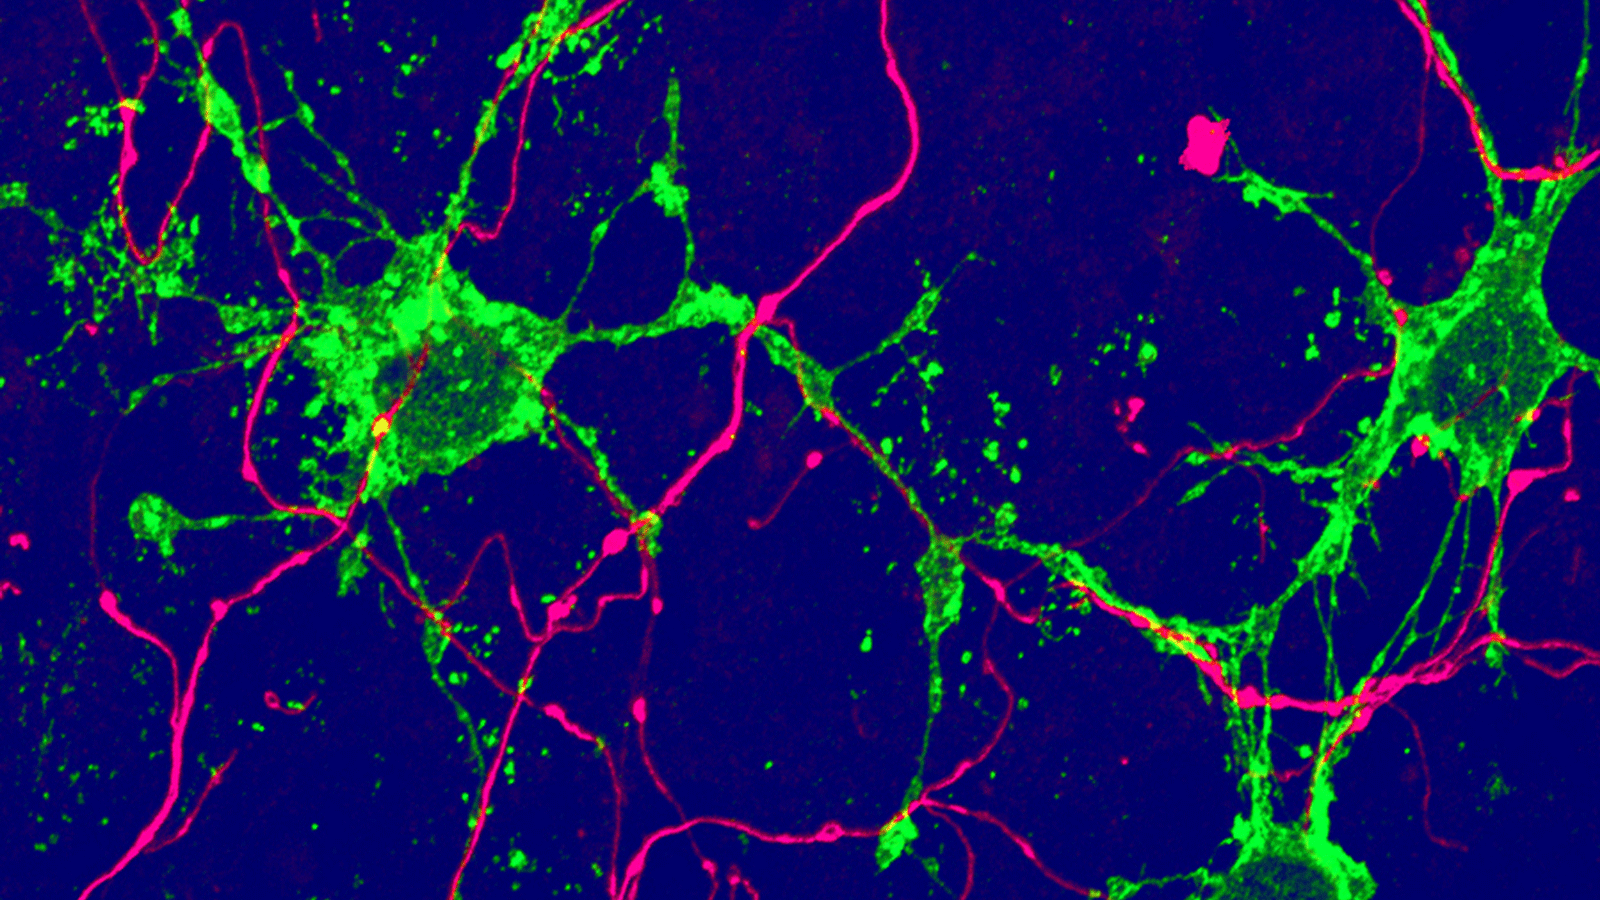 نوع جديد من الخلايا الدبقية (الخضراء) ، ينشأ من الخلايا الجذعية البالغة في الدماغ، ويتلامس مع الخلايا العصبية (أرجواني). (الصورة: جامعة بازل، Biozentrum)